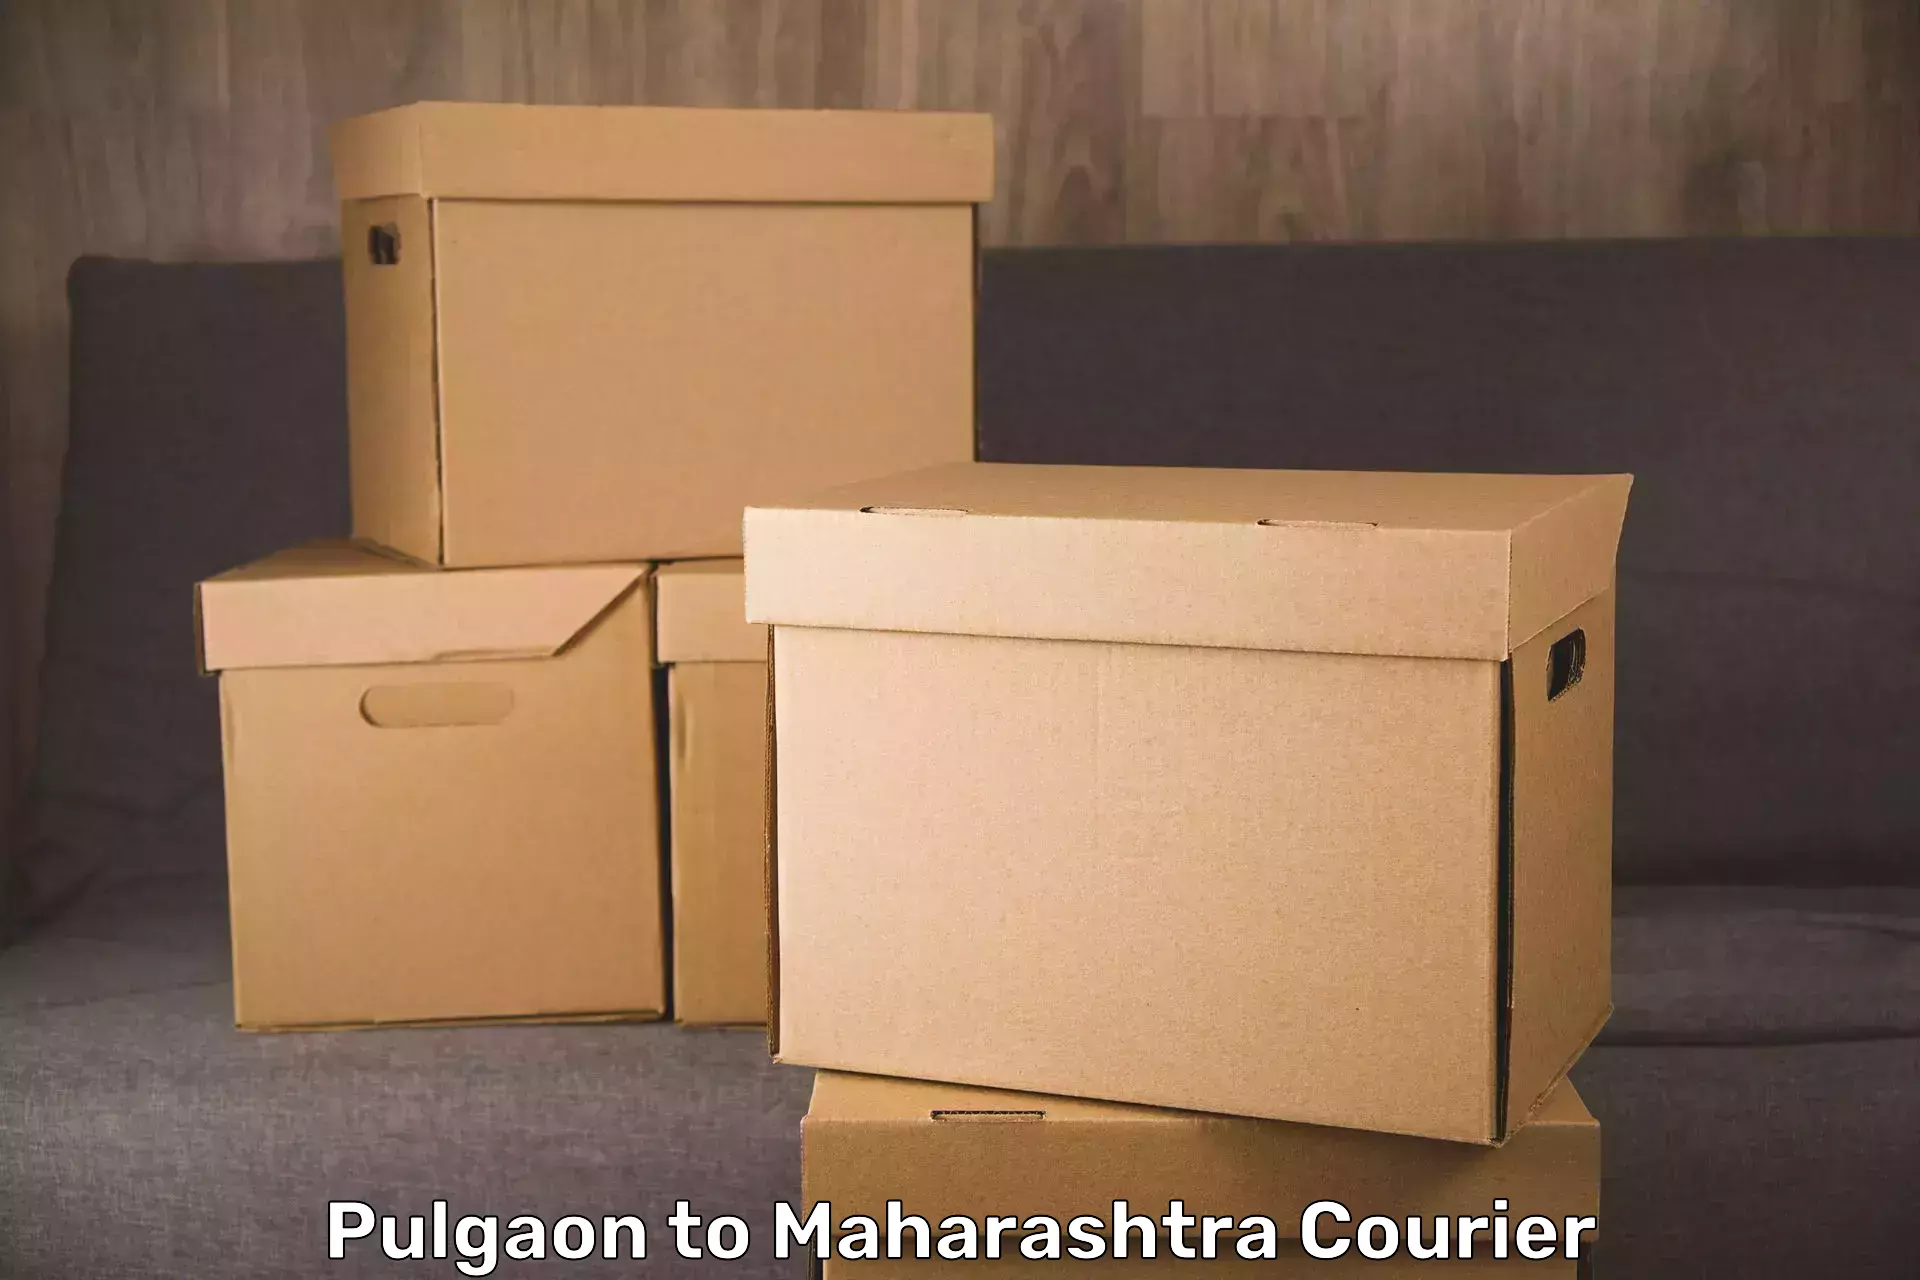 Luggage delivery network Pulgaon to Maharashtra